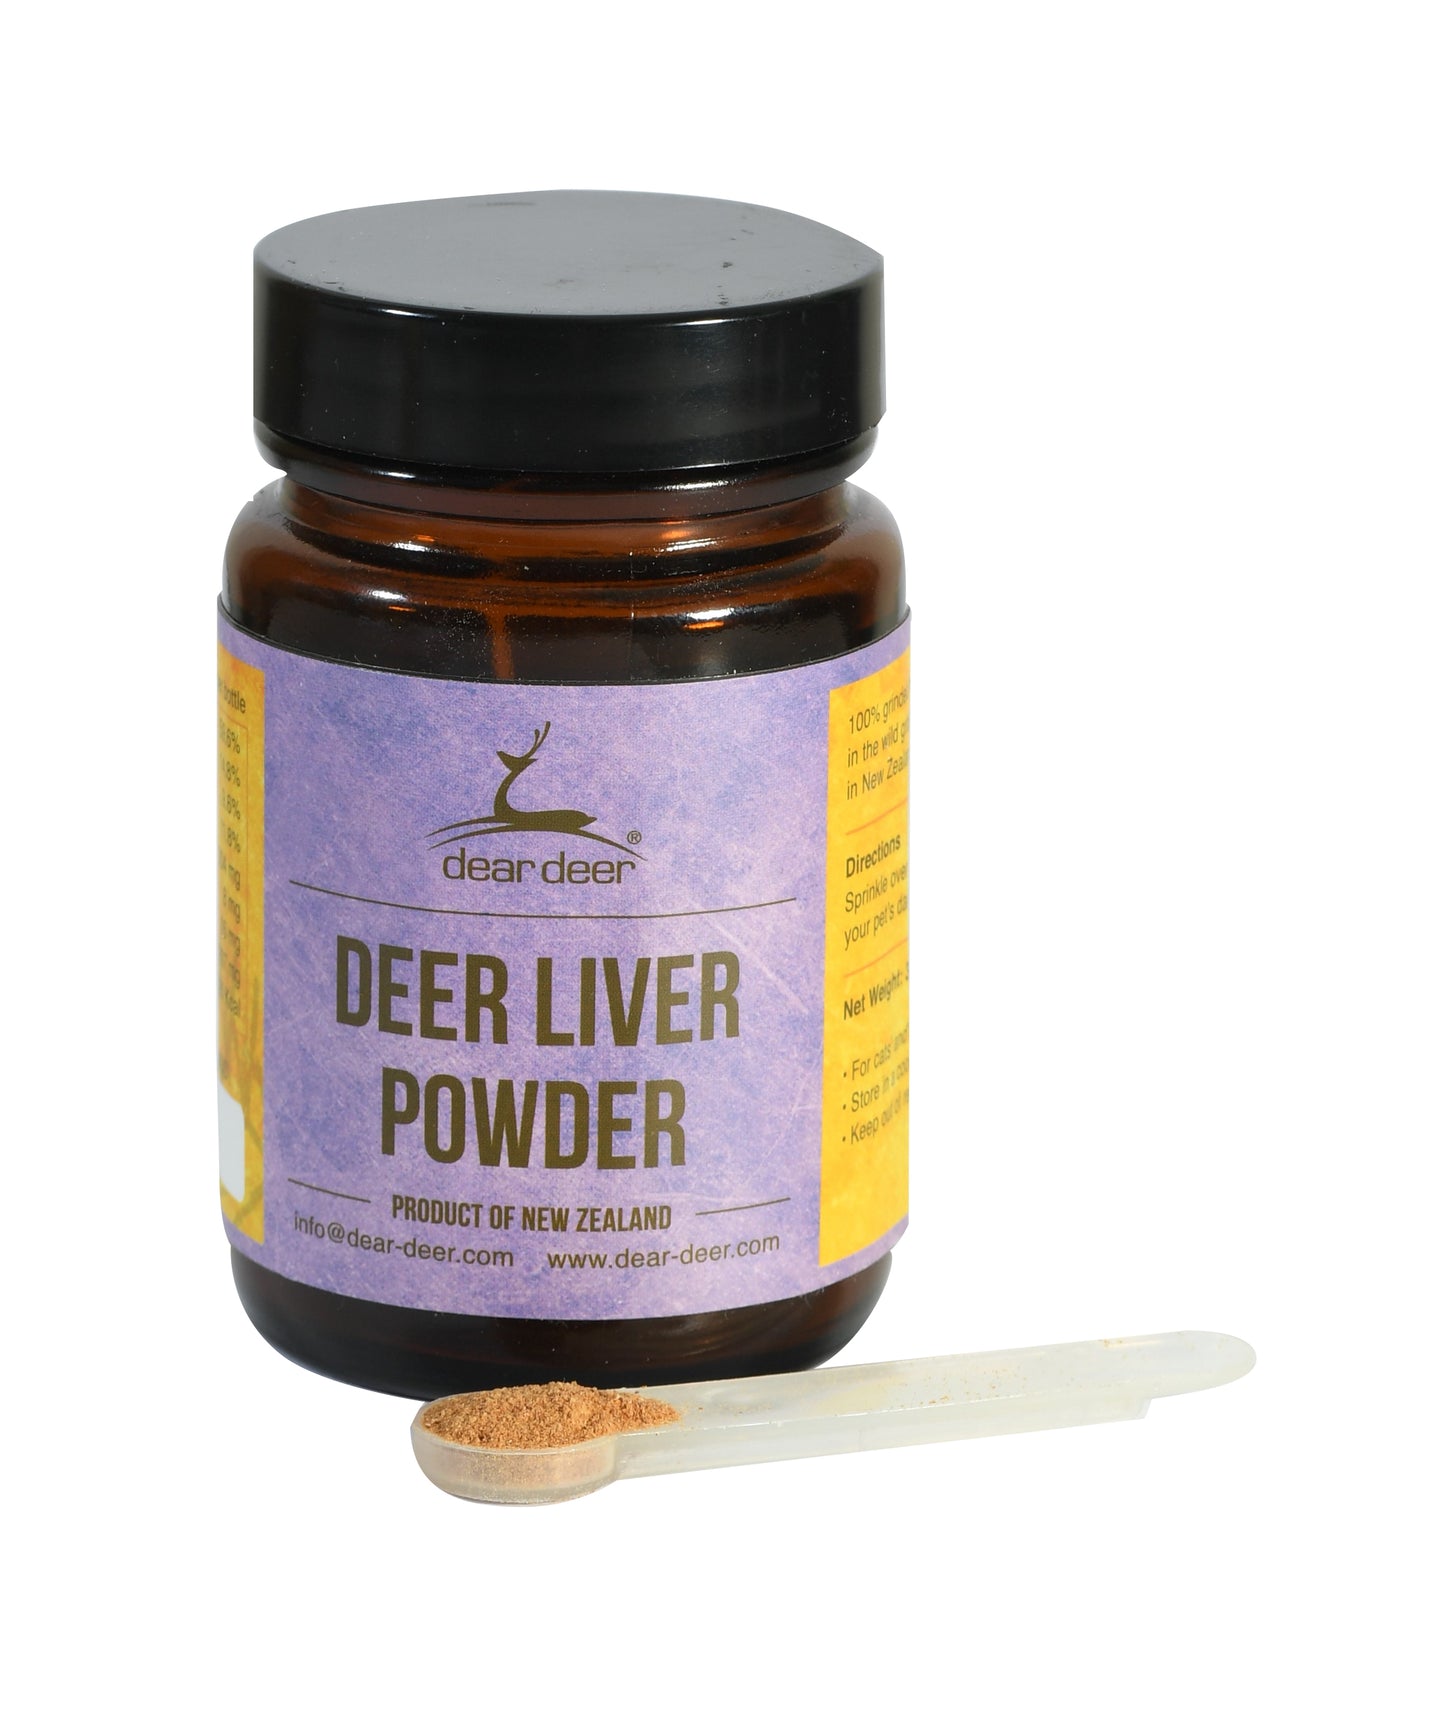 Dear Deer 鹿肝粉 (Deer Liver Powder) 30g